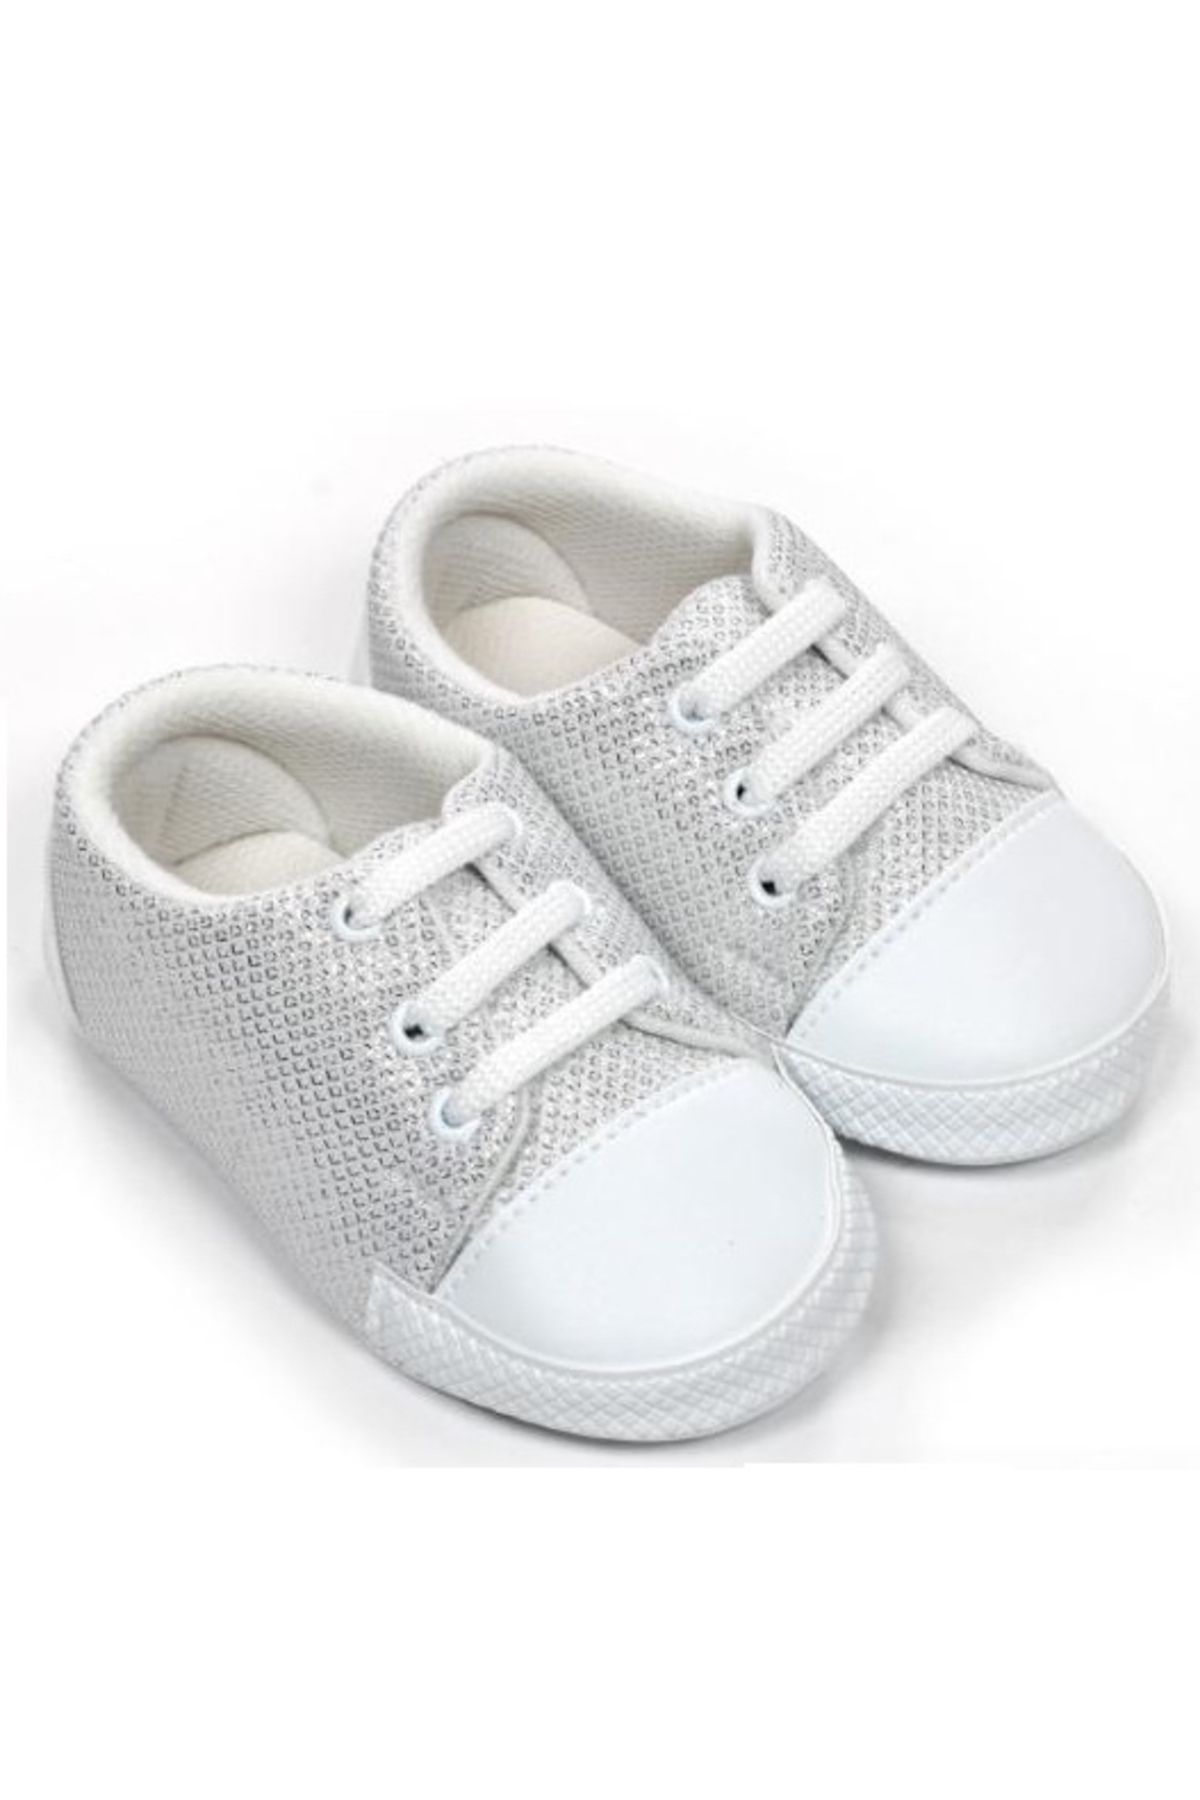 Yogi parti Bebek Ayakkabısı ilk adım 18-19 Numara 11-13 cm Taban Ölçüsü Bez Ayakkabı